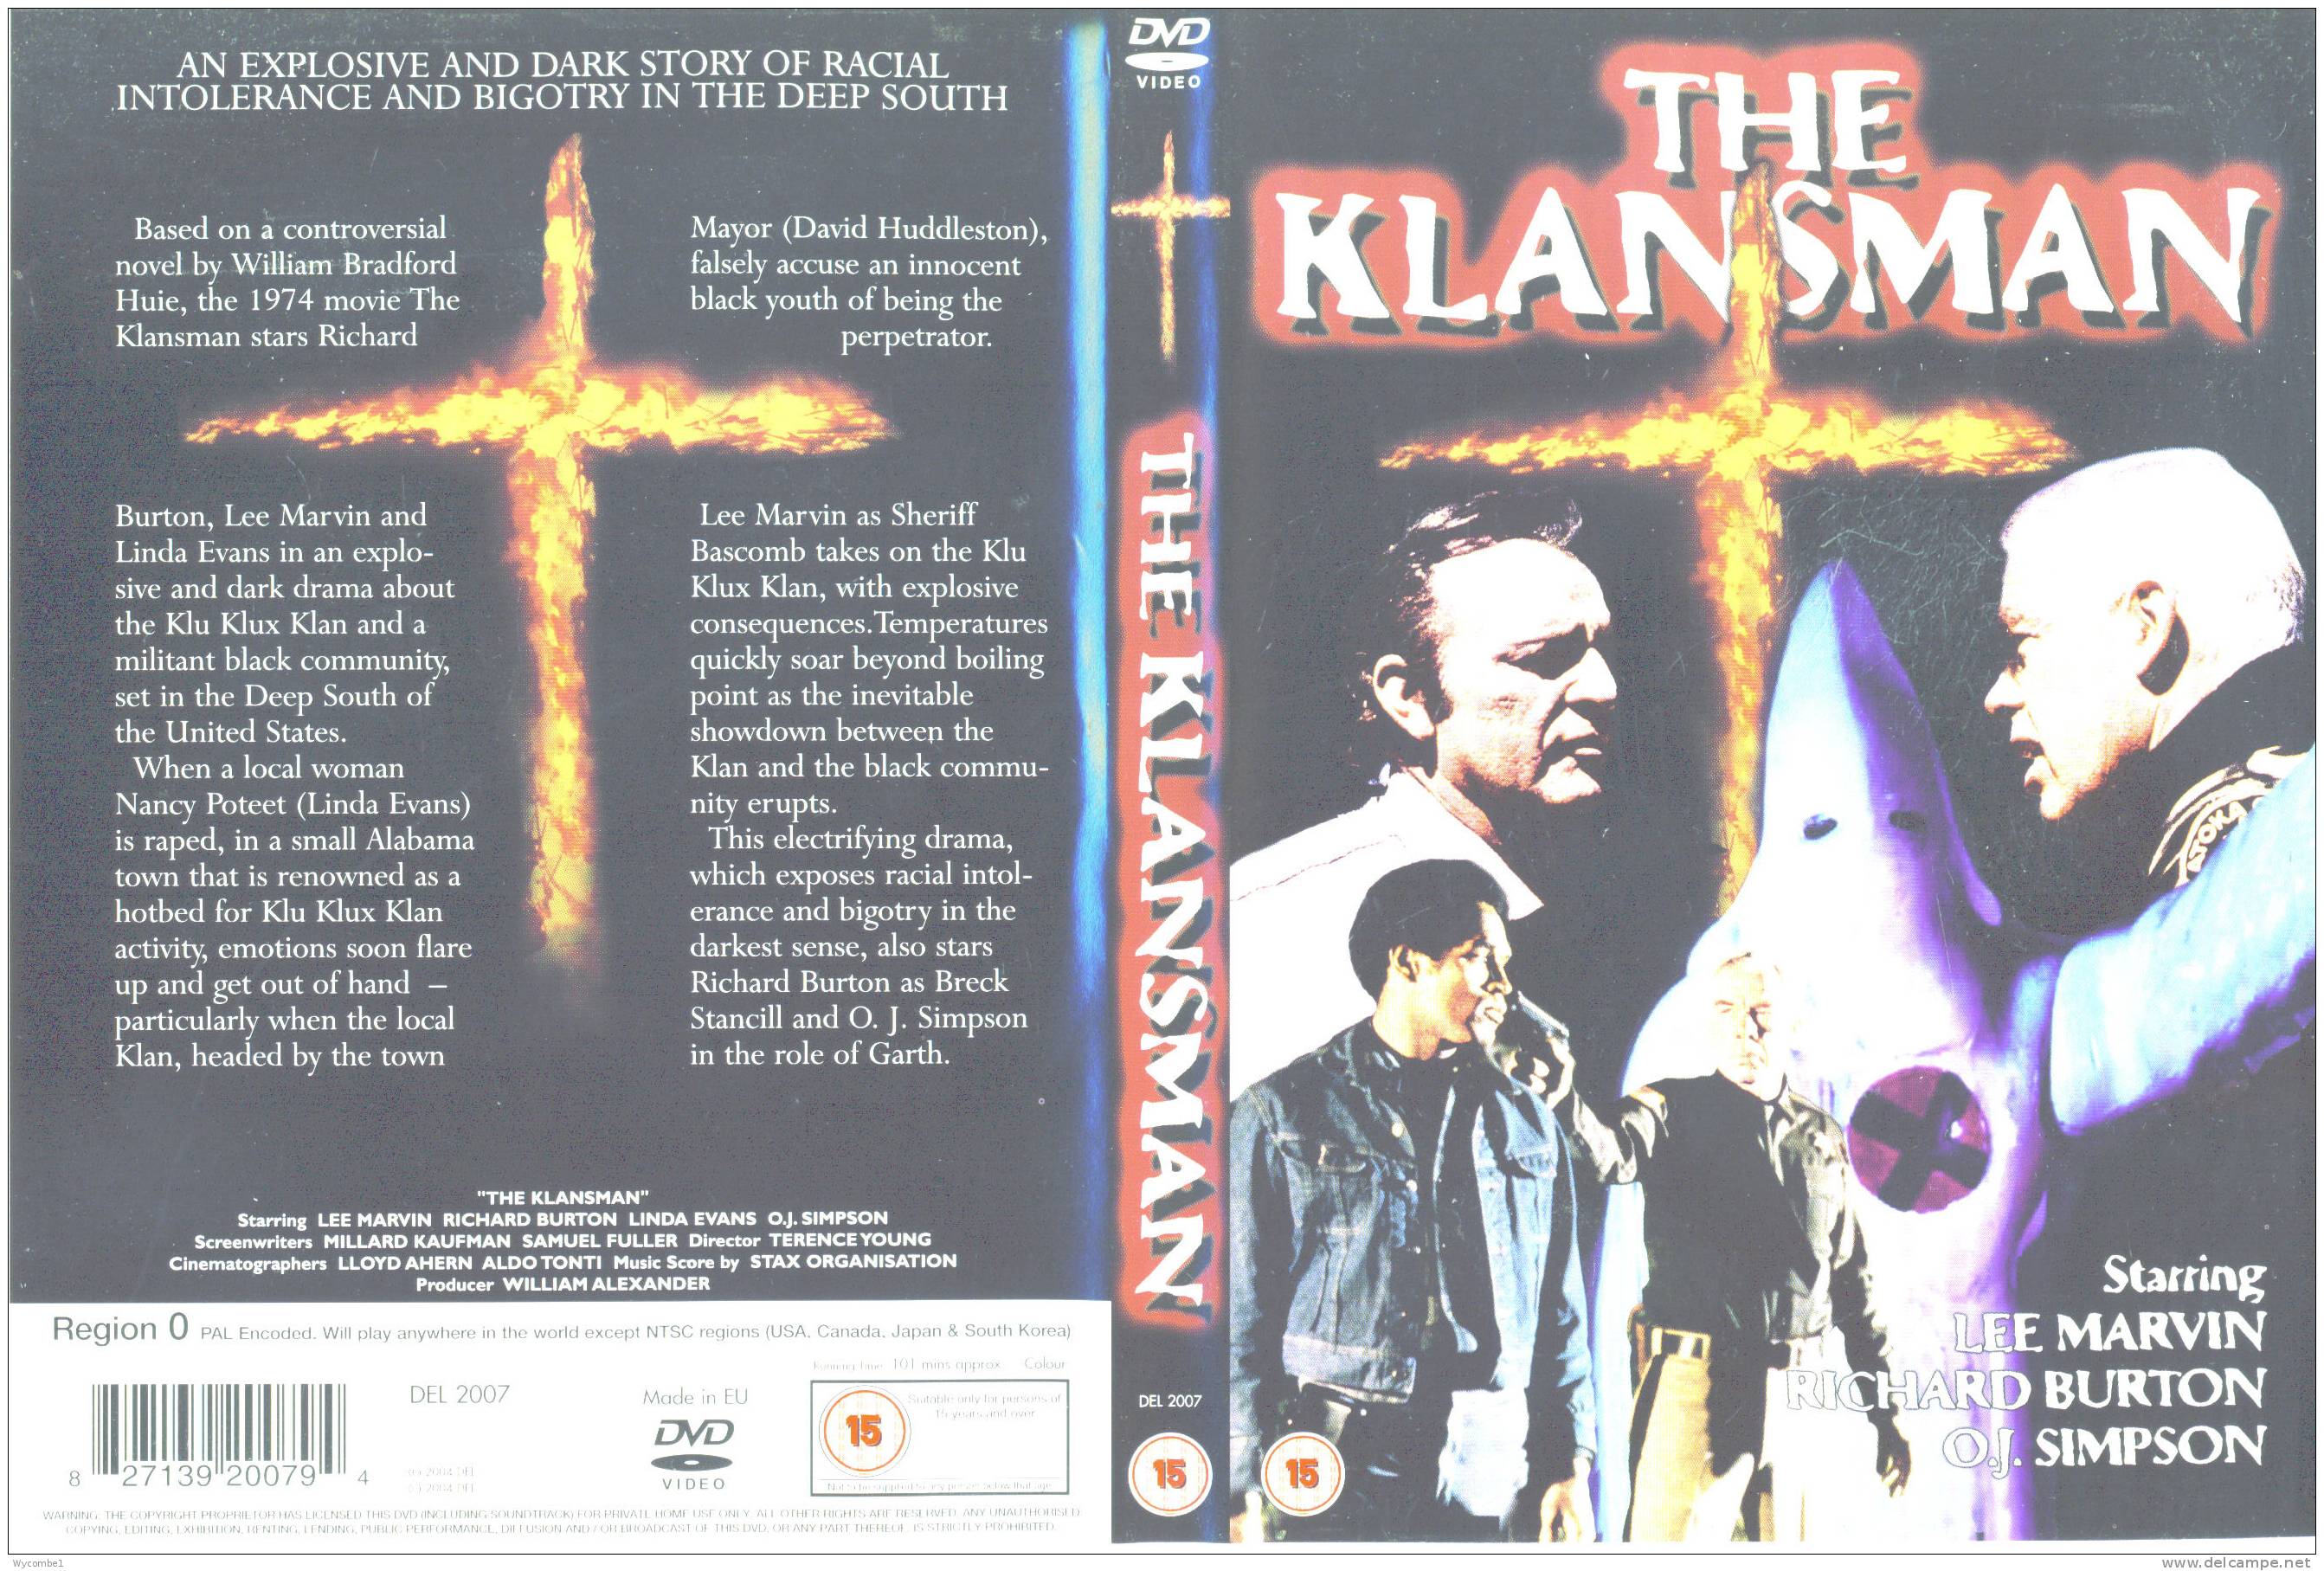 THE KLANSMAN - Lee Marvin (Details In Scan) - Drama